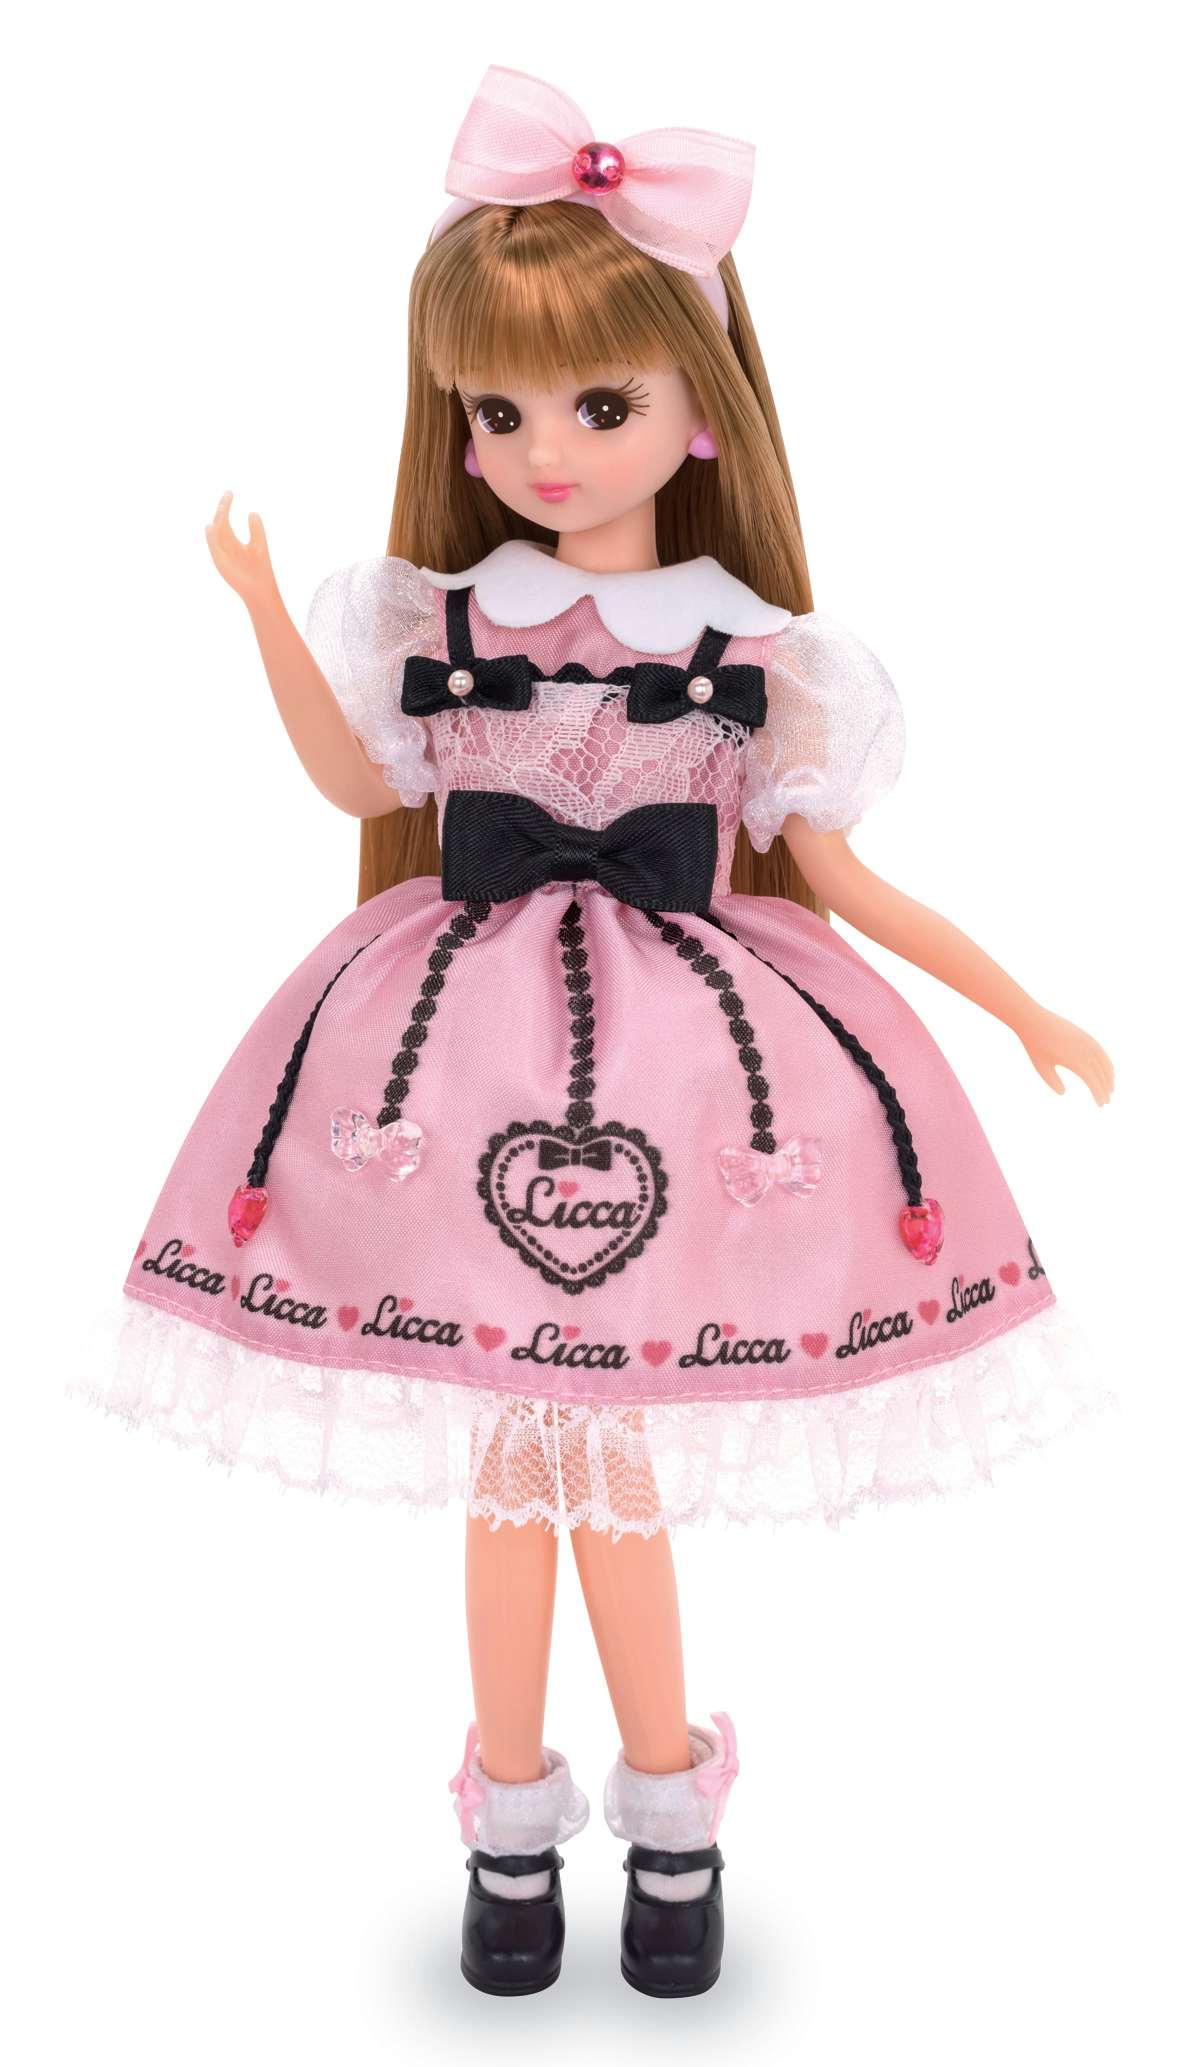 【公式半額】Licca リカちゃん 限定 誕生50周年記念 人形